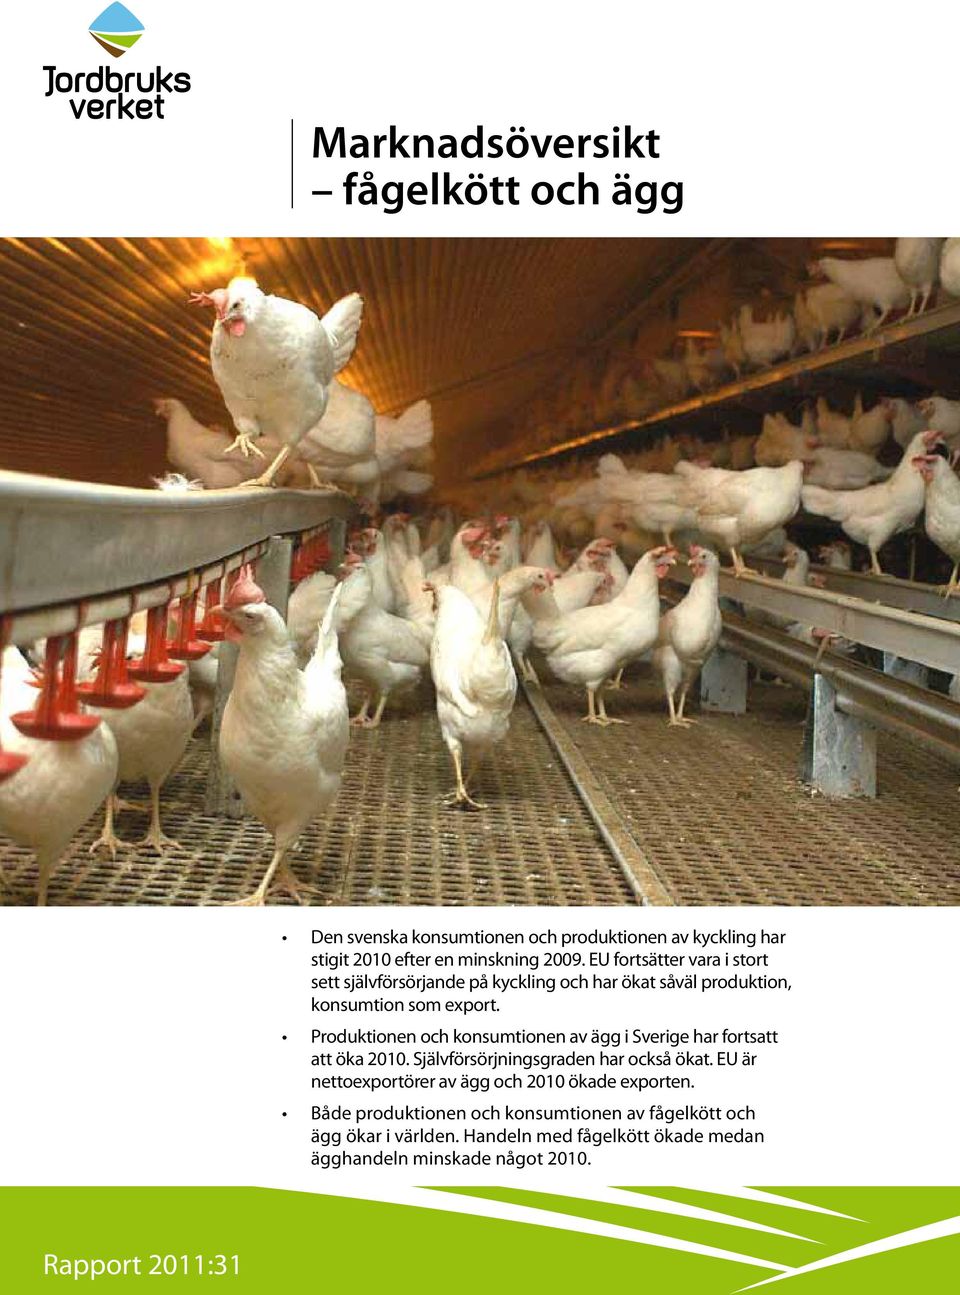 Produktionen och konsumtionen av ägg i Sverige har fortsatt att öka 2010. Självförsörjningsgraden har också ökat.